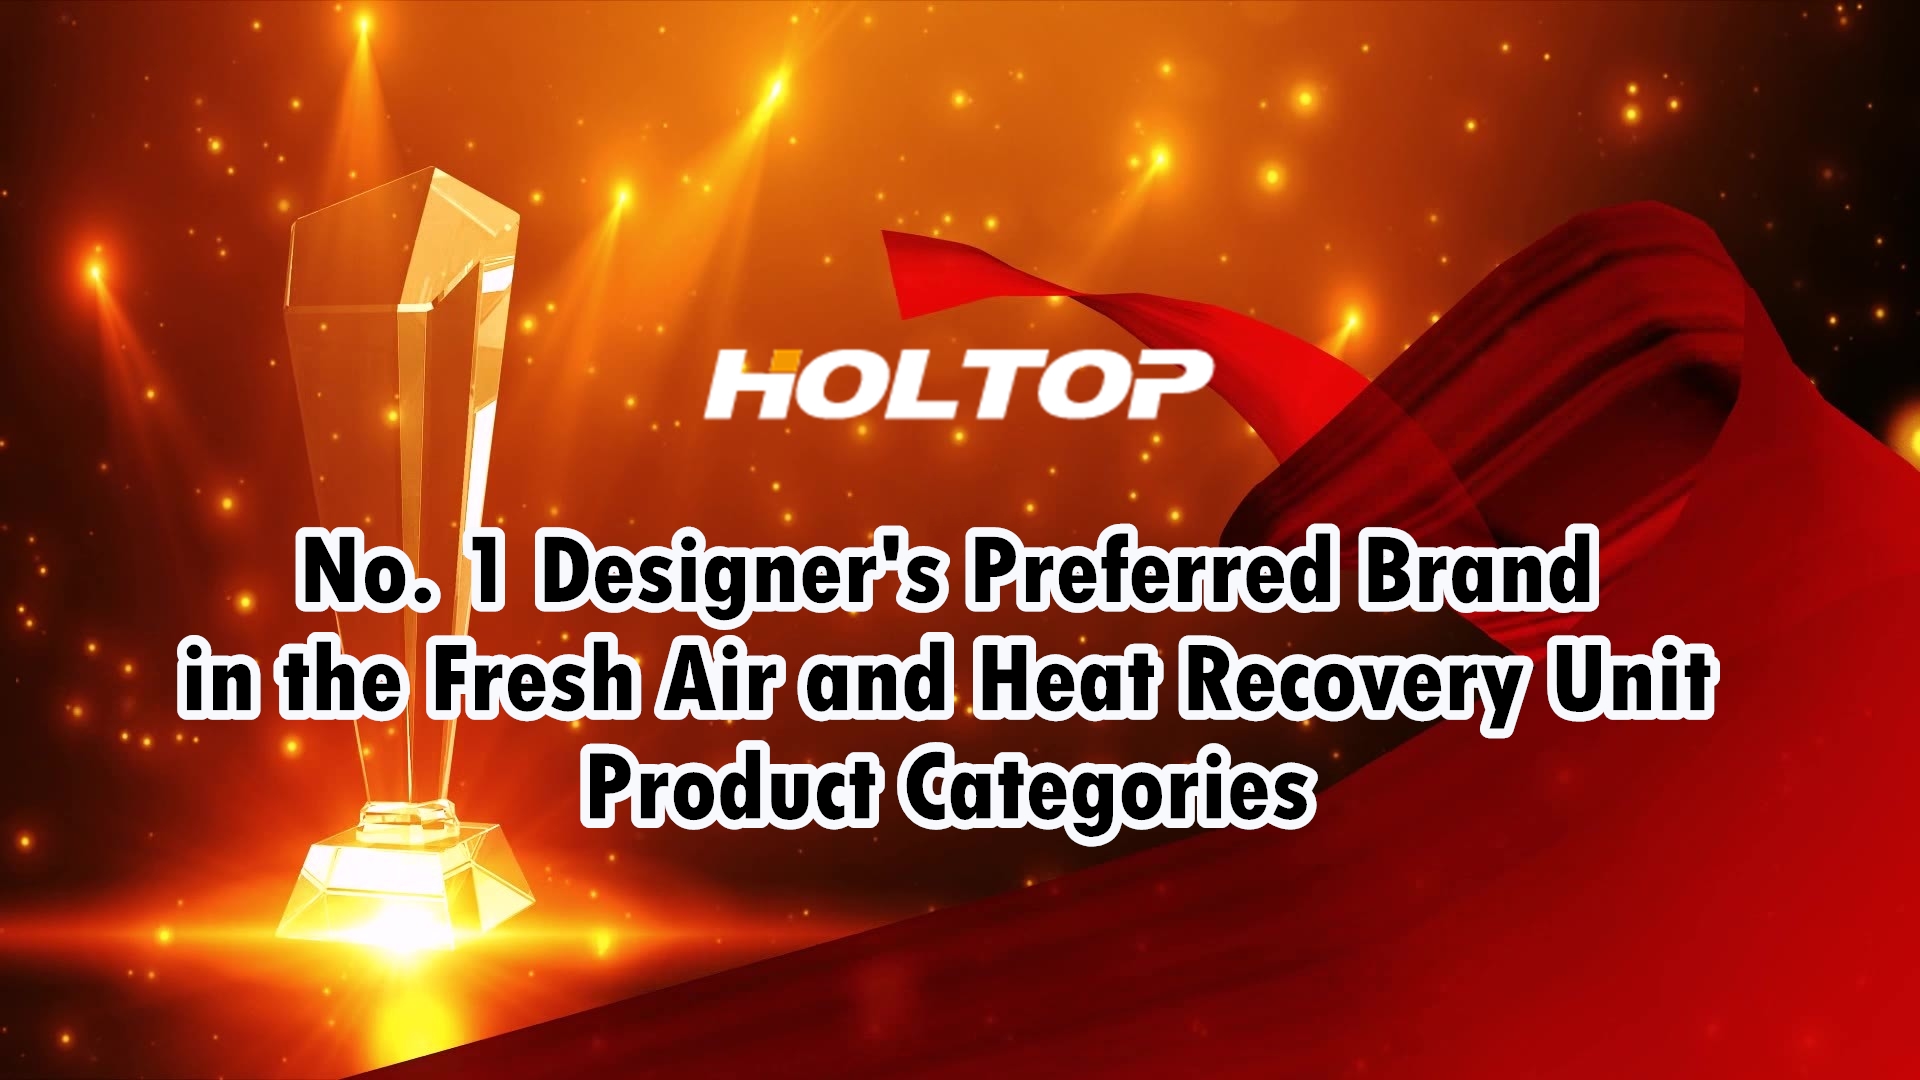 HOLTOP è il marchio preferito dai designer n. 1 nelle categorie di prodotti per unità di recupero di aria fresca e calore nel mercato cinese